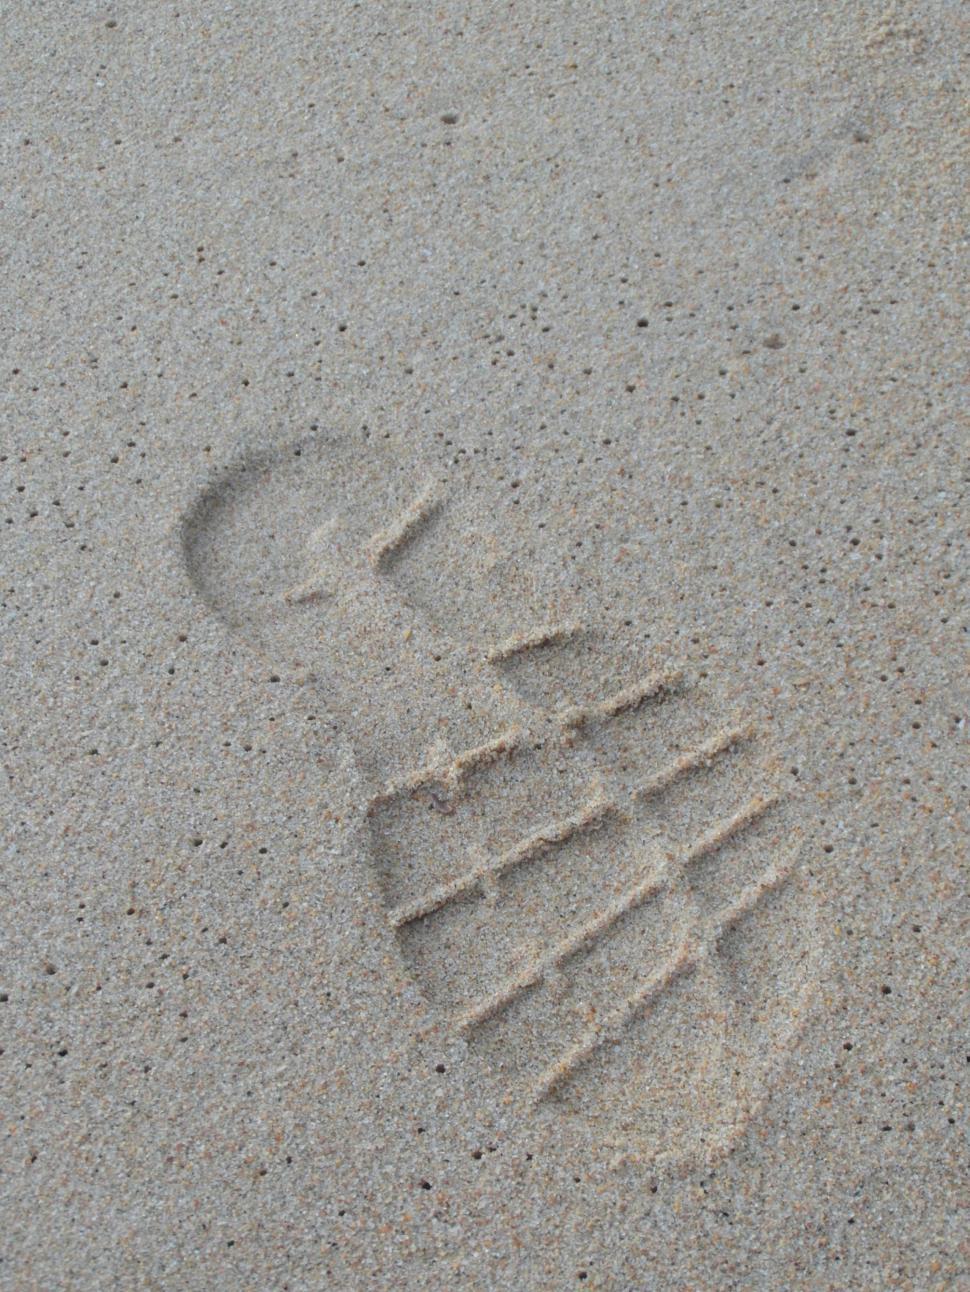 Free Image of Shoeprint on sand 